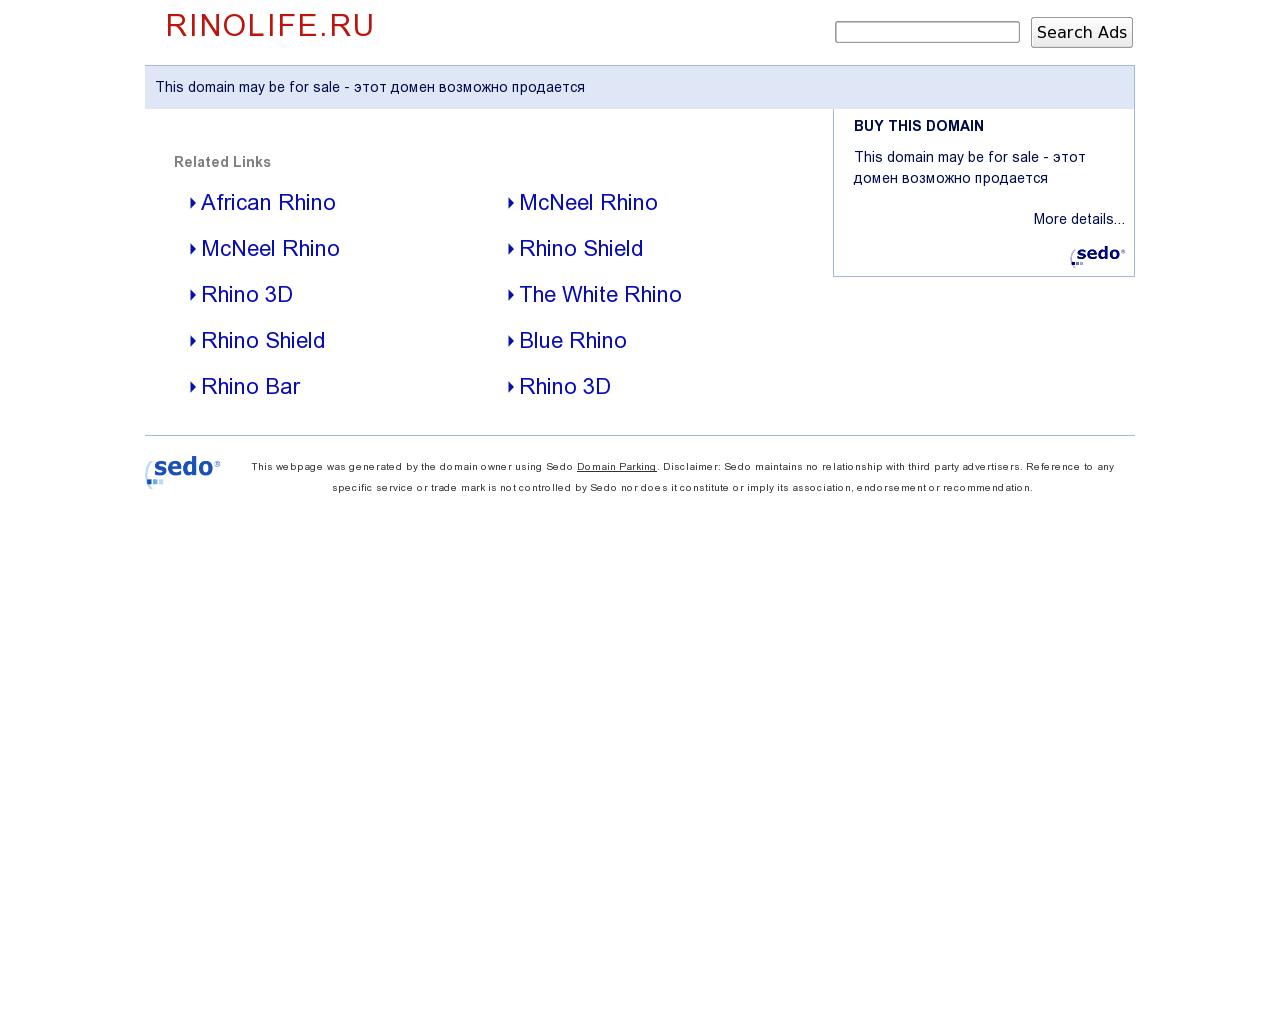 Изображение сайта rinolife.ru в разрешении 1280x1024